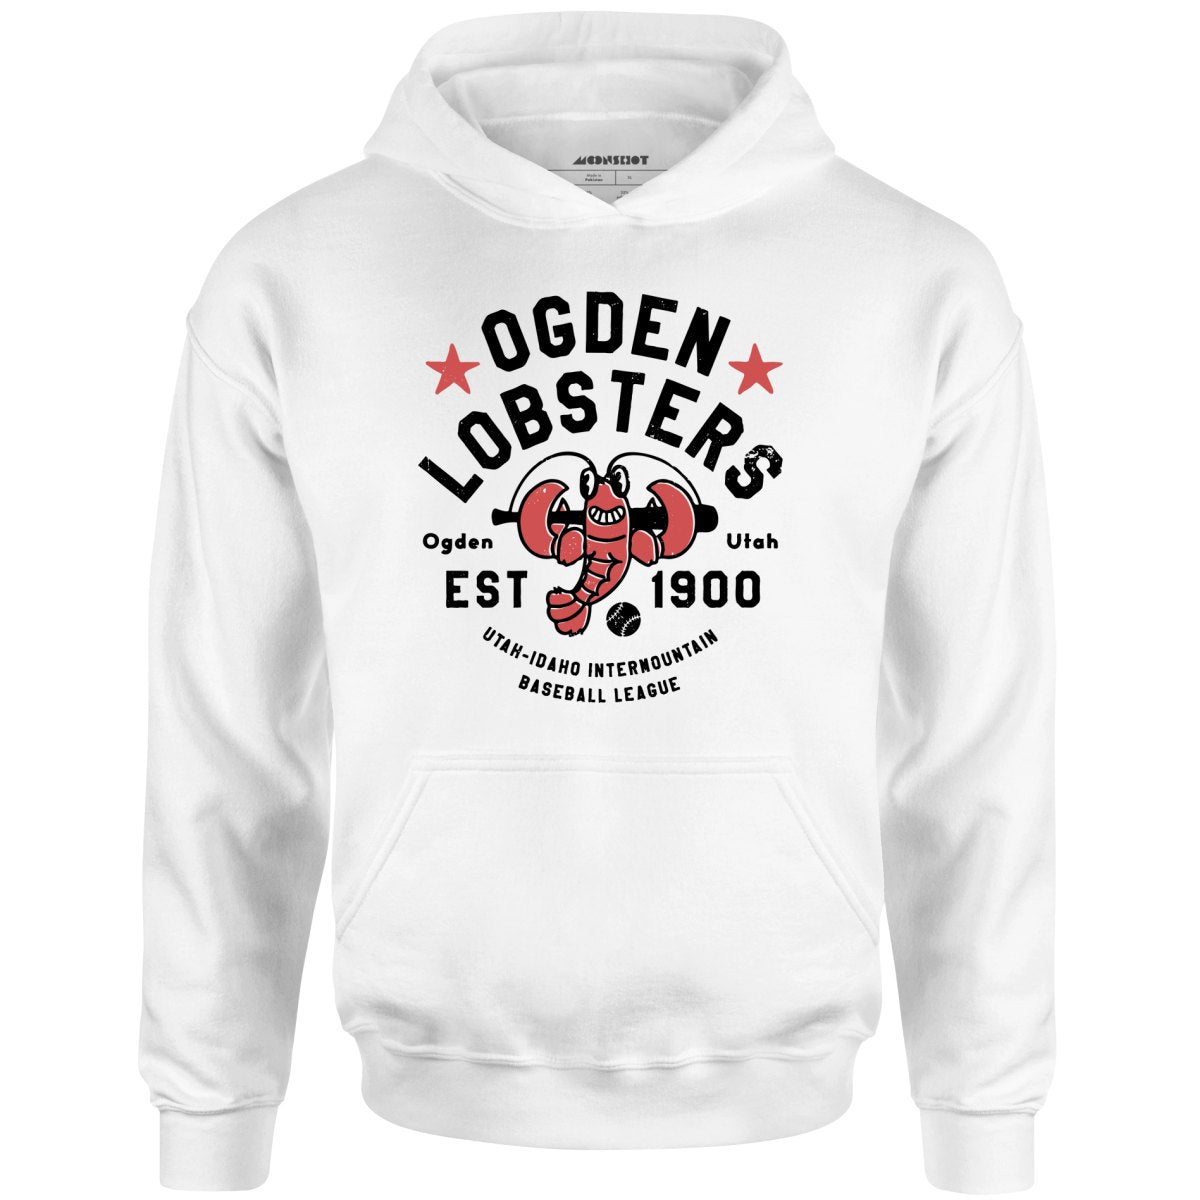 Ogden Lobsters - Utah - Vintage Defunct Baseball Teams - Unisex Hoodie